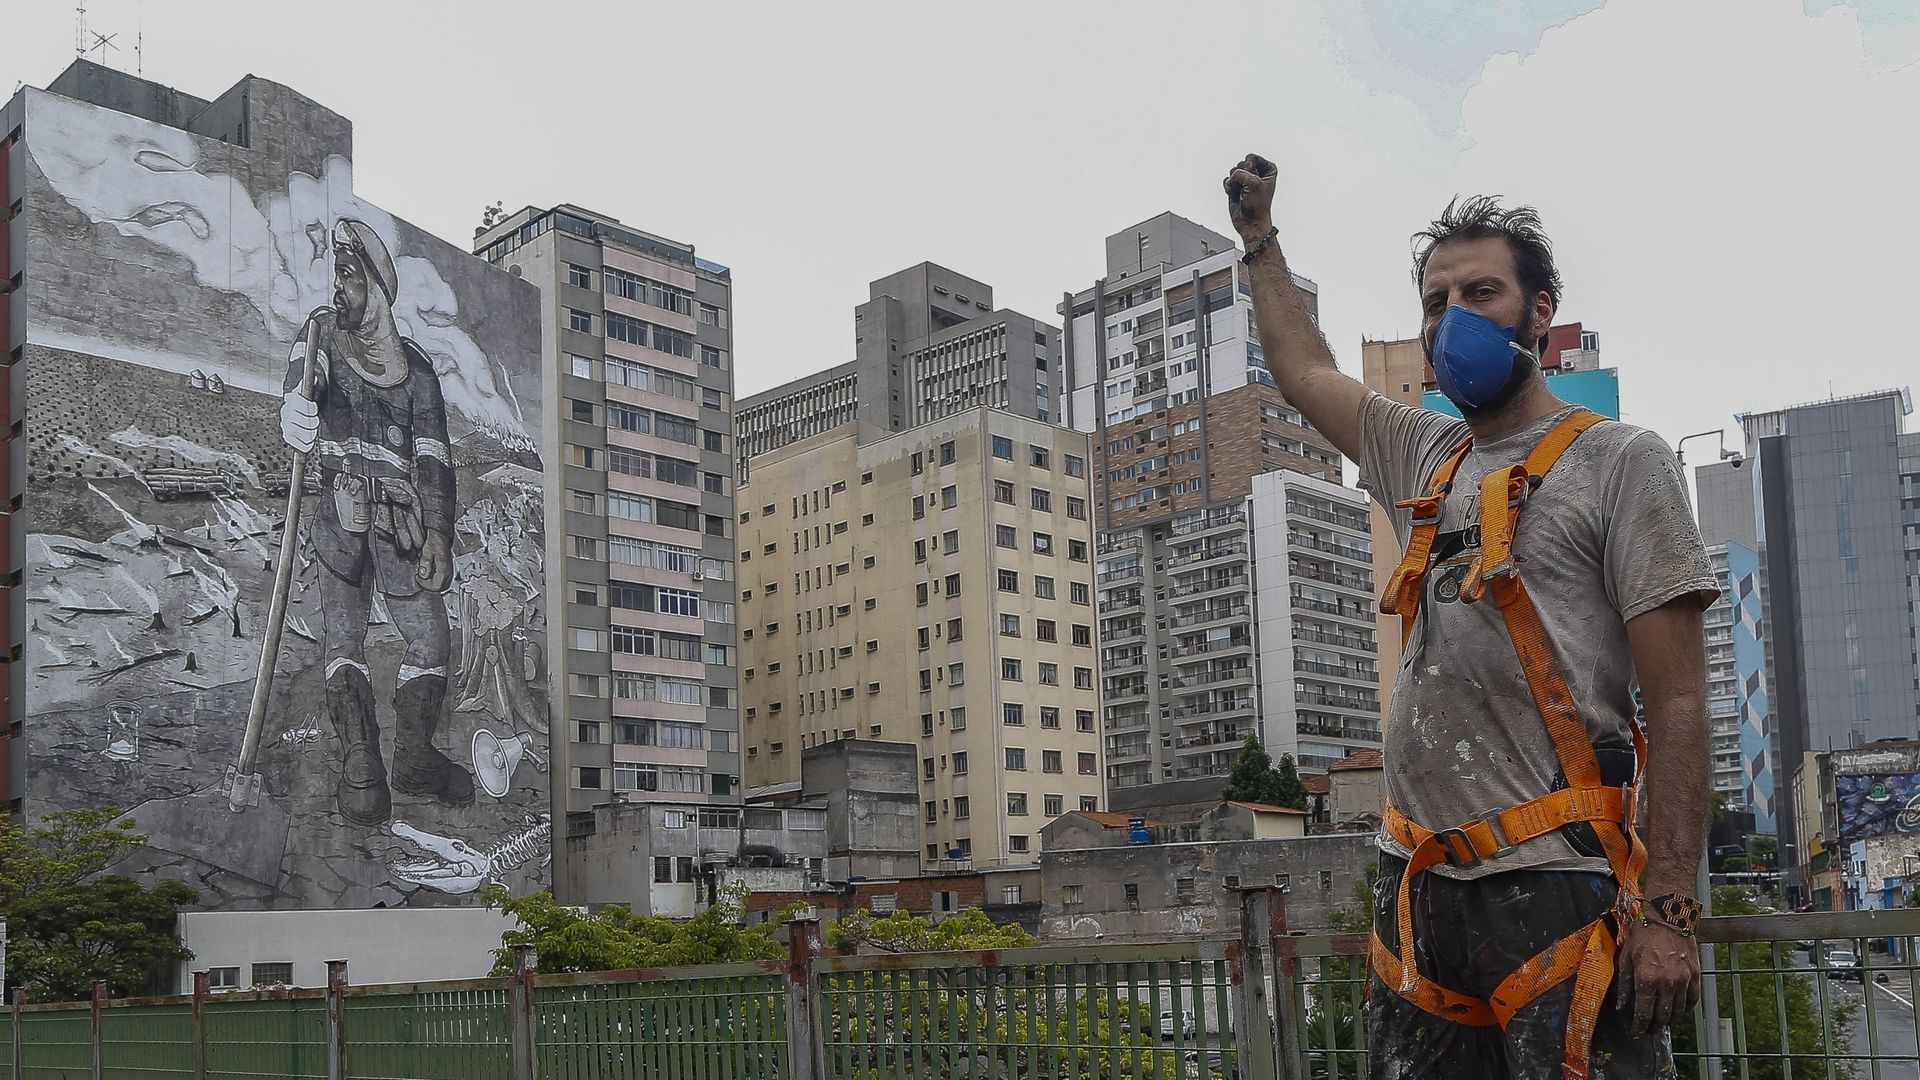 L’artiste brésilien Mundano pose avec sa fresque de 780m², peinte avec des cendres ramassées lors d’incendies de forêt, qui réinterprète l’œuvre "O lavrador de cafe" du peintre brésilien Candido Portinari, à Sao Paulo, le 13 octobre 2021.